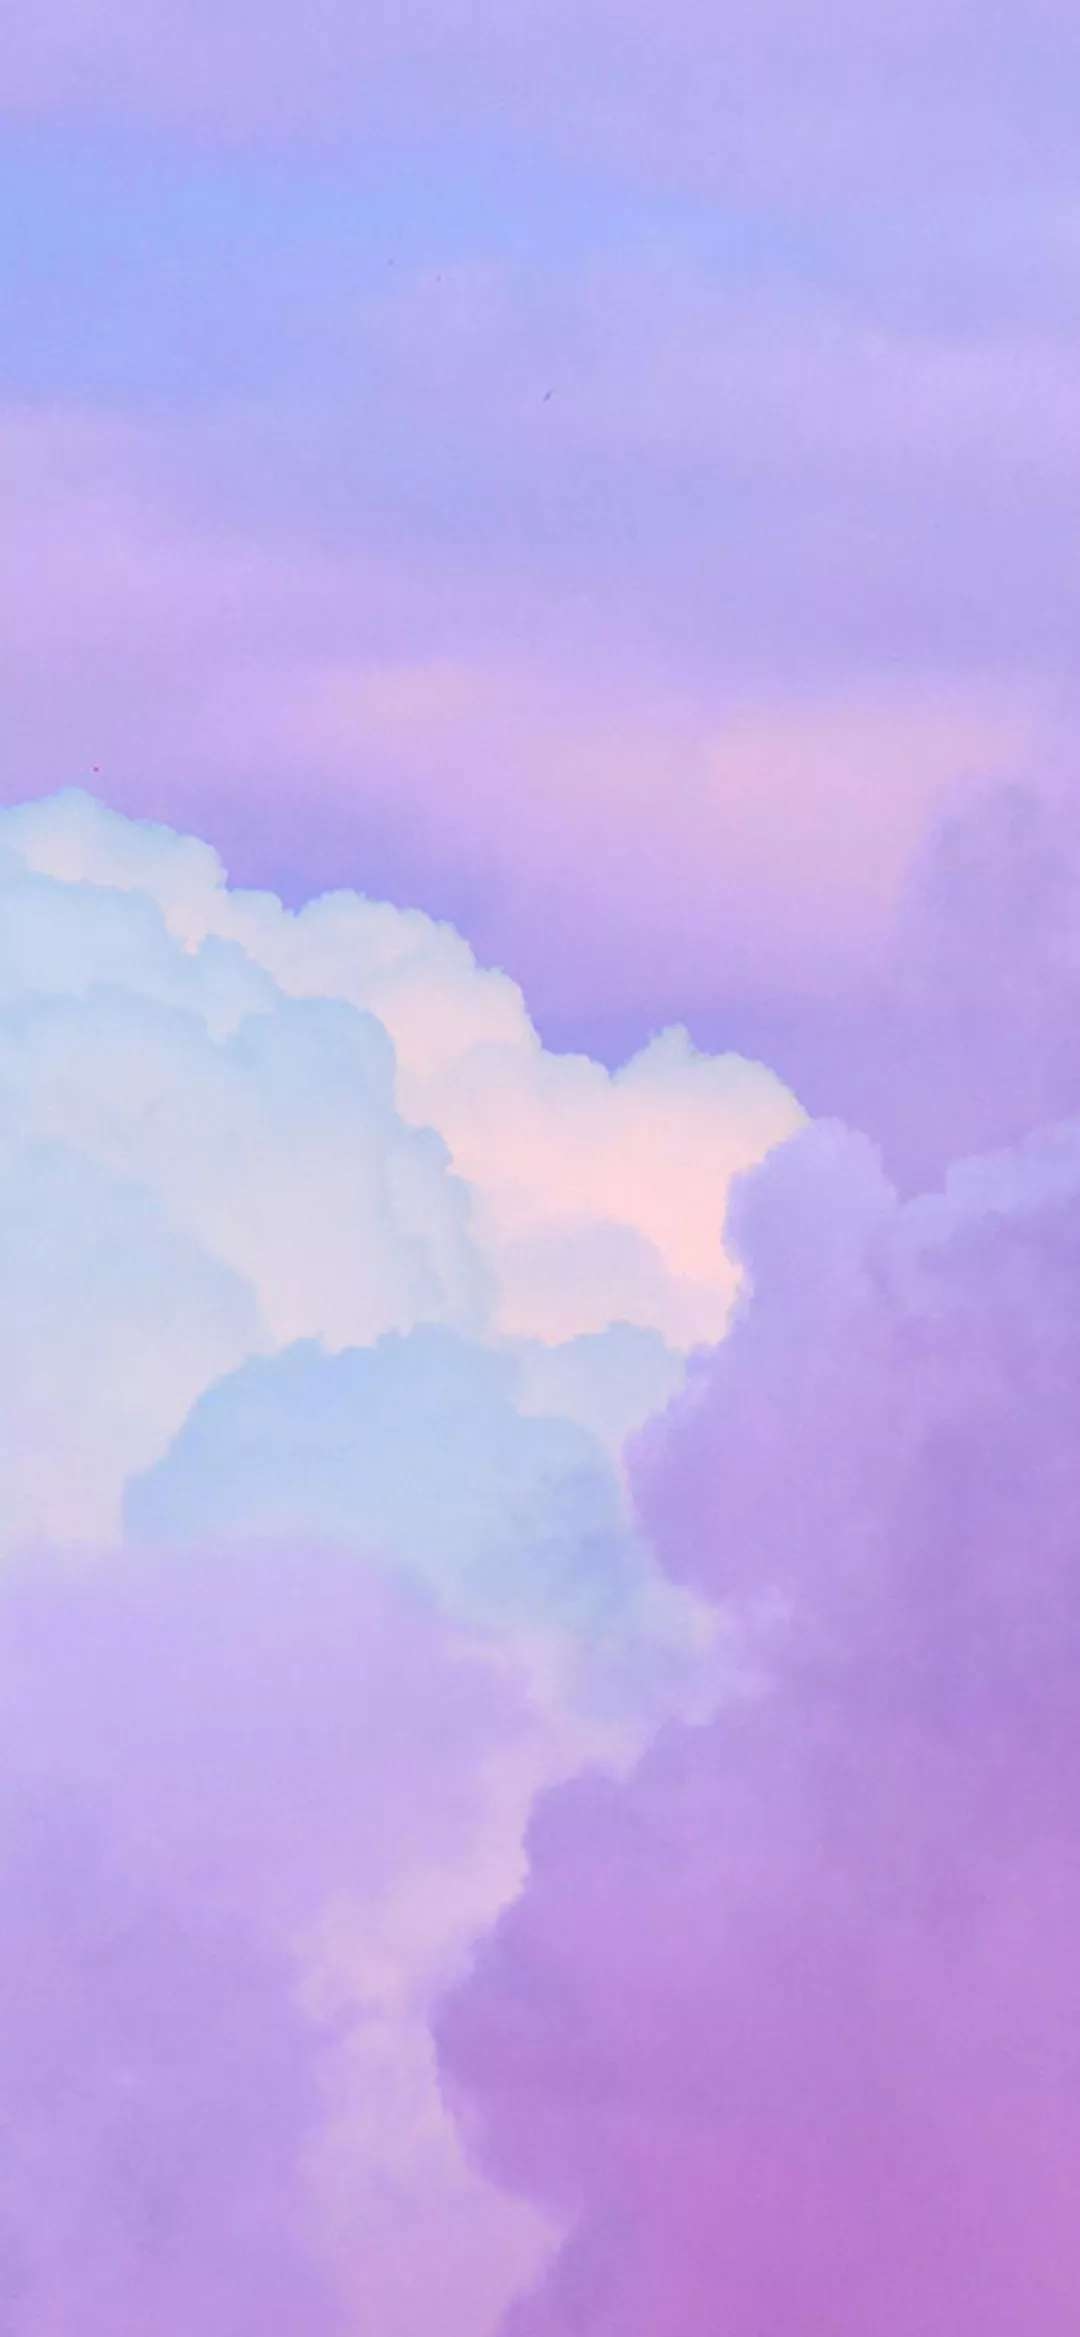 罕见的紫色壁纸哟!_唯美图片_我要个性网